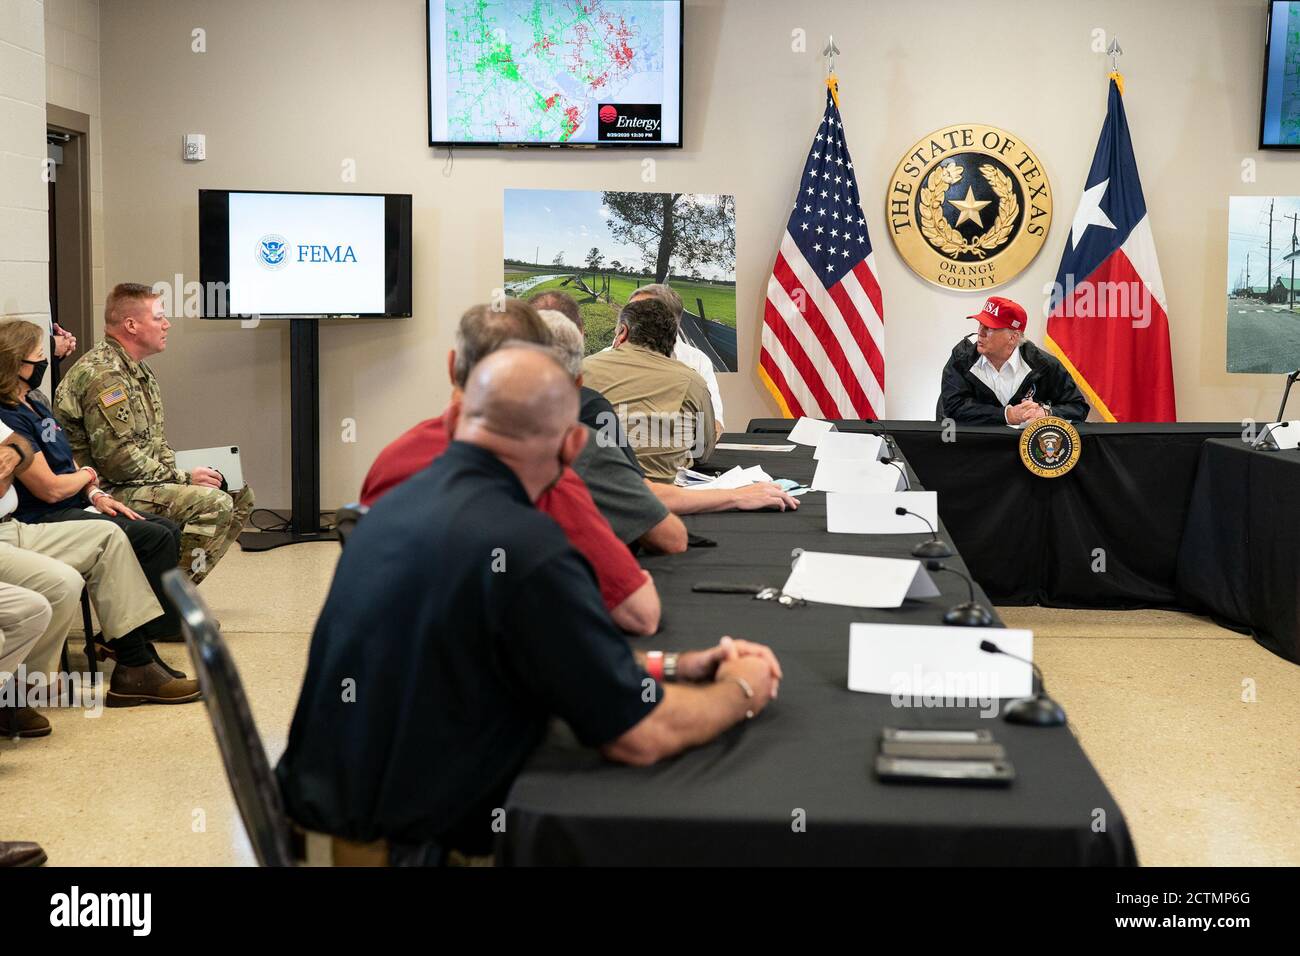 El presidente Trump en Texas. El presidente Donald J. Trump participa en una sesión informativa sobre el centro de operaciones de emergencia en el Centro de Convenciones y Exposiciones del Condado de Orange en Orange, Texas, el sábado 29 de agosto de 2020, como parte de la visita del presidente Trump a las áreas afectadas por el huracán Laura. Foto de stock